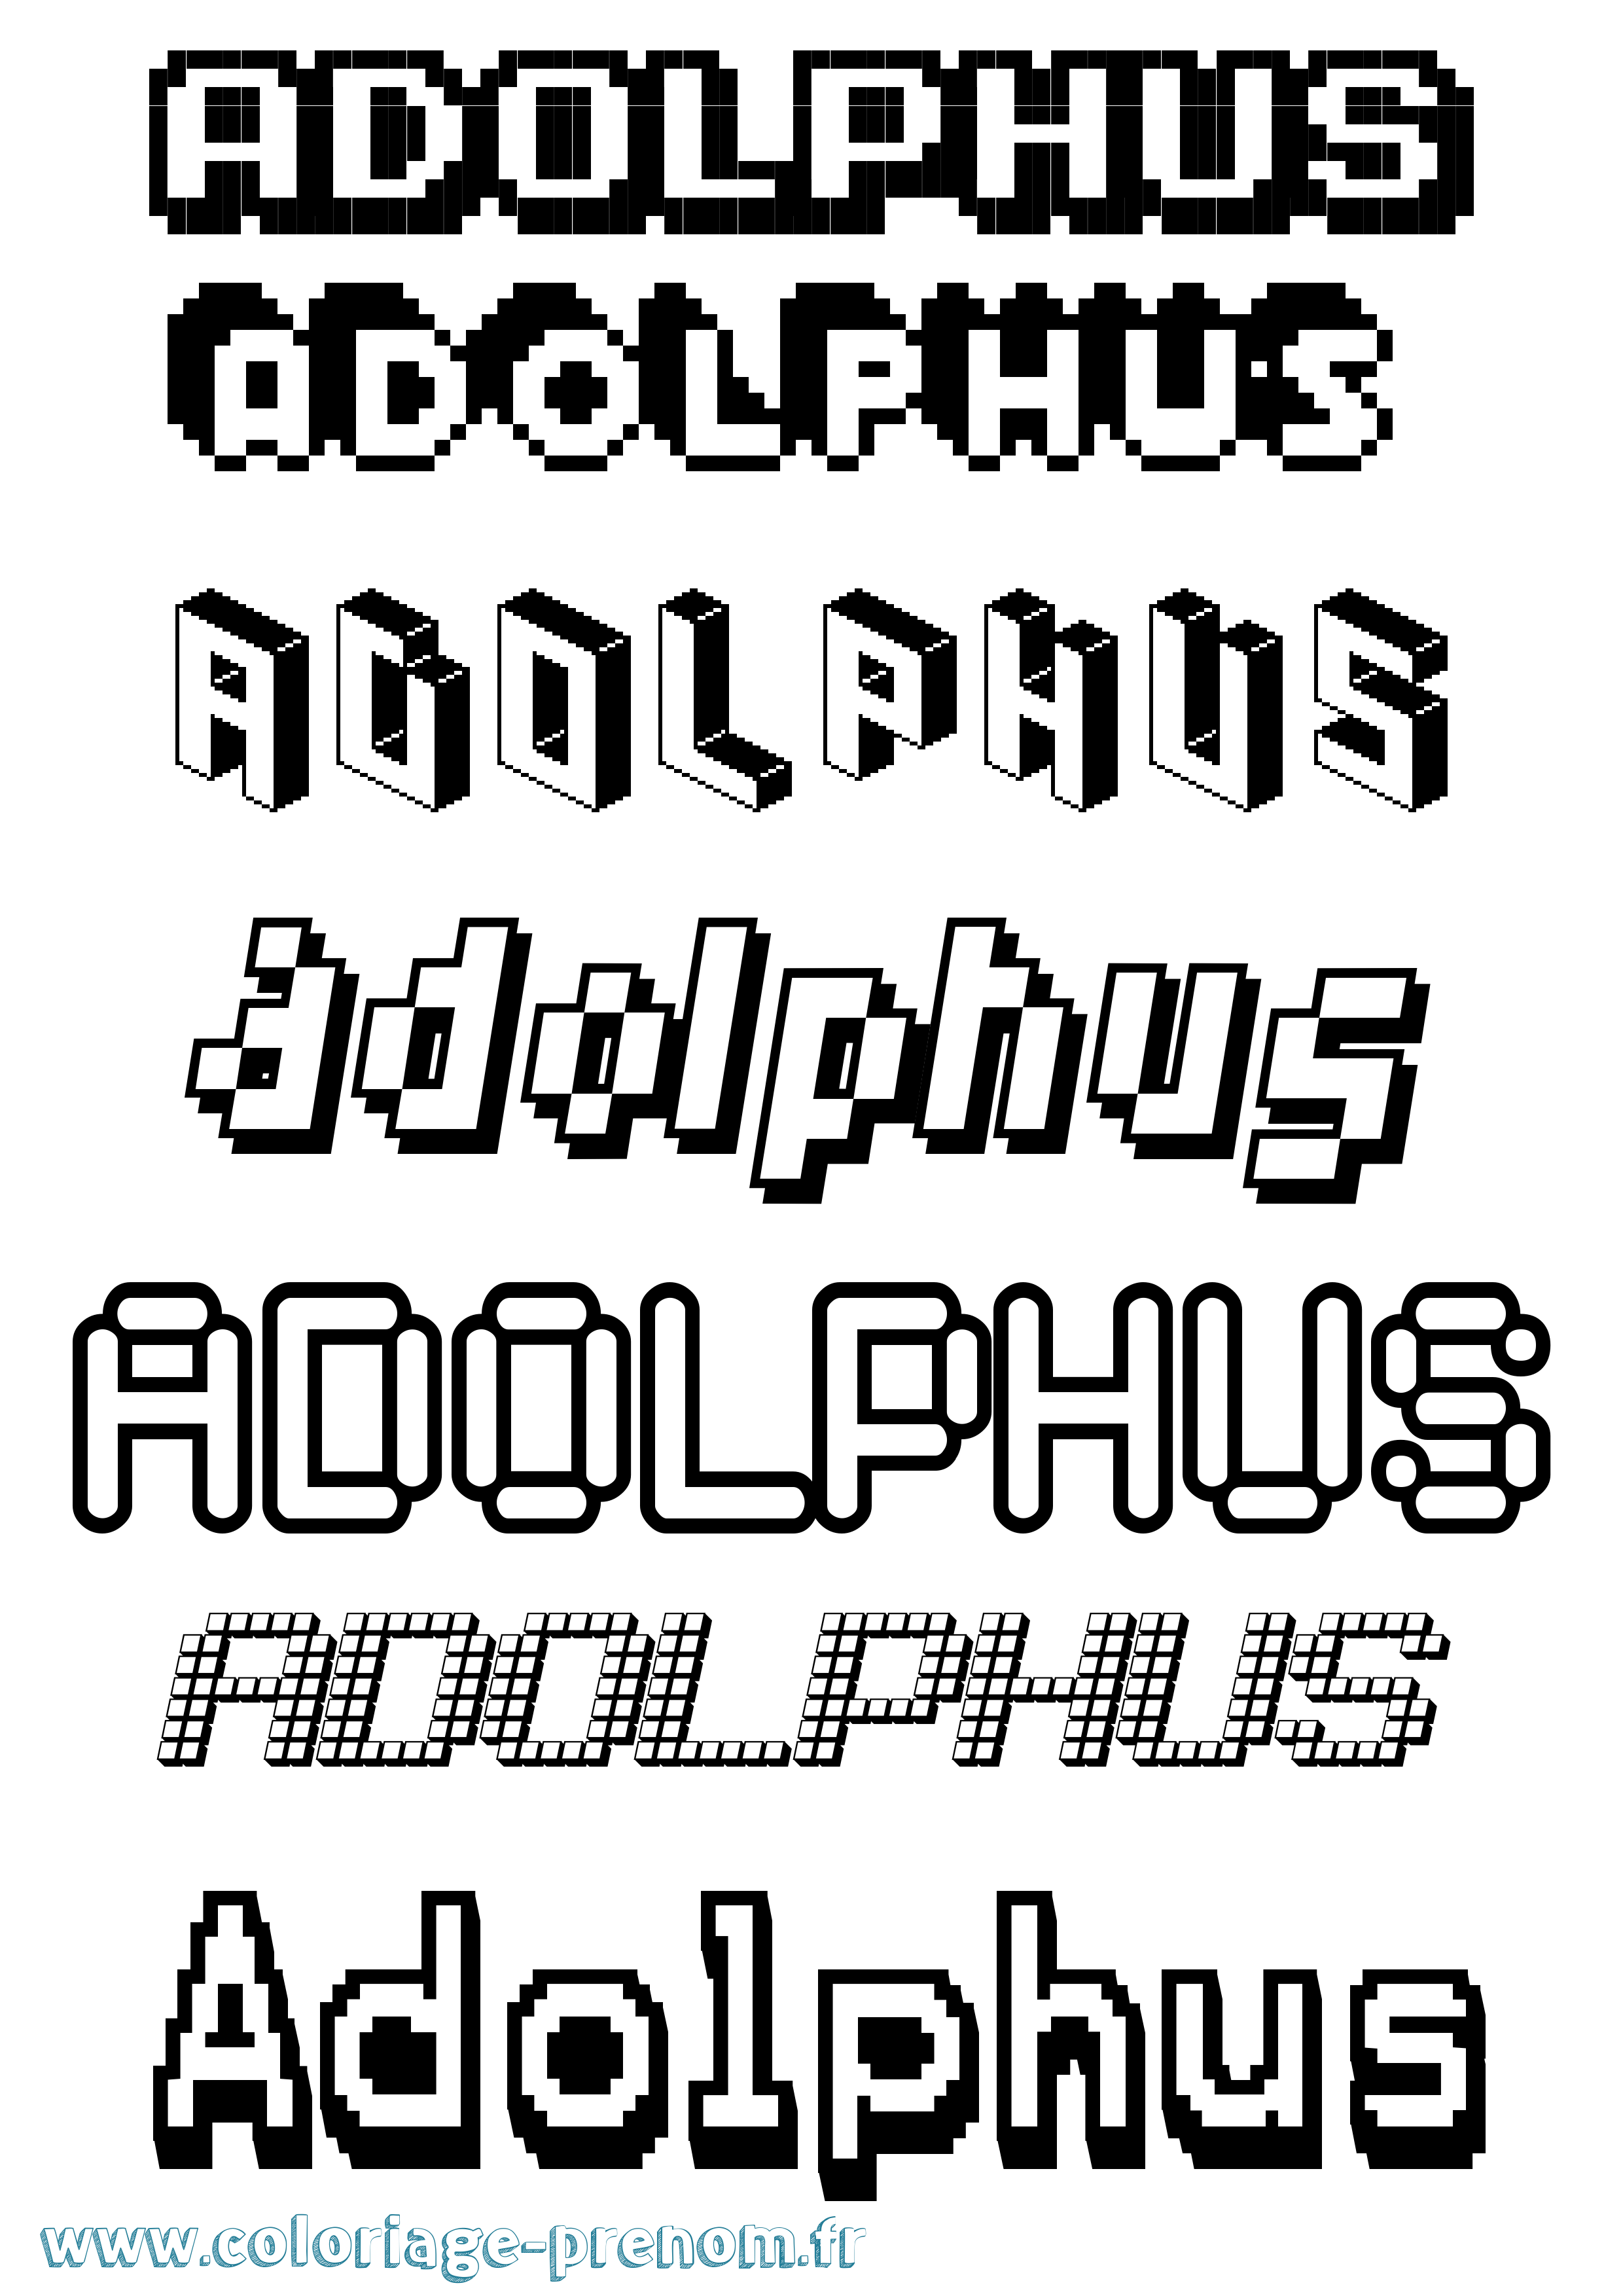 Coloriage prénom Adolphus Pixel